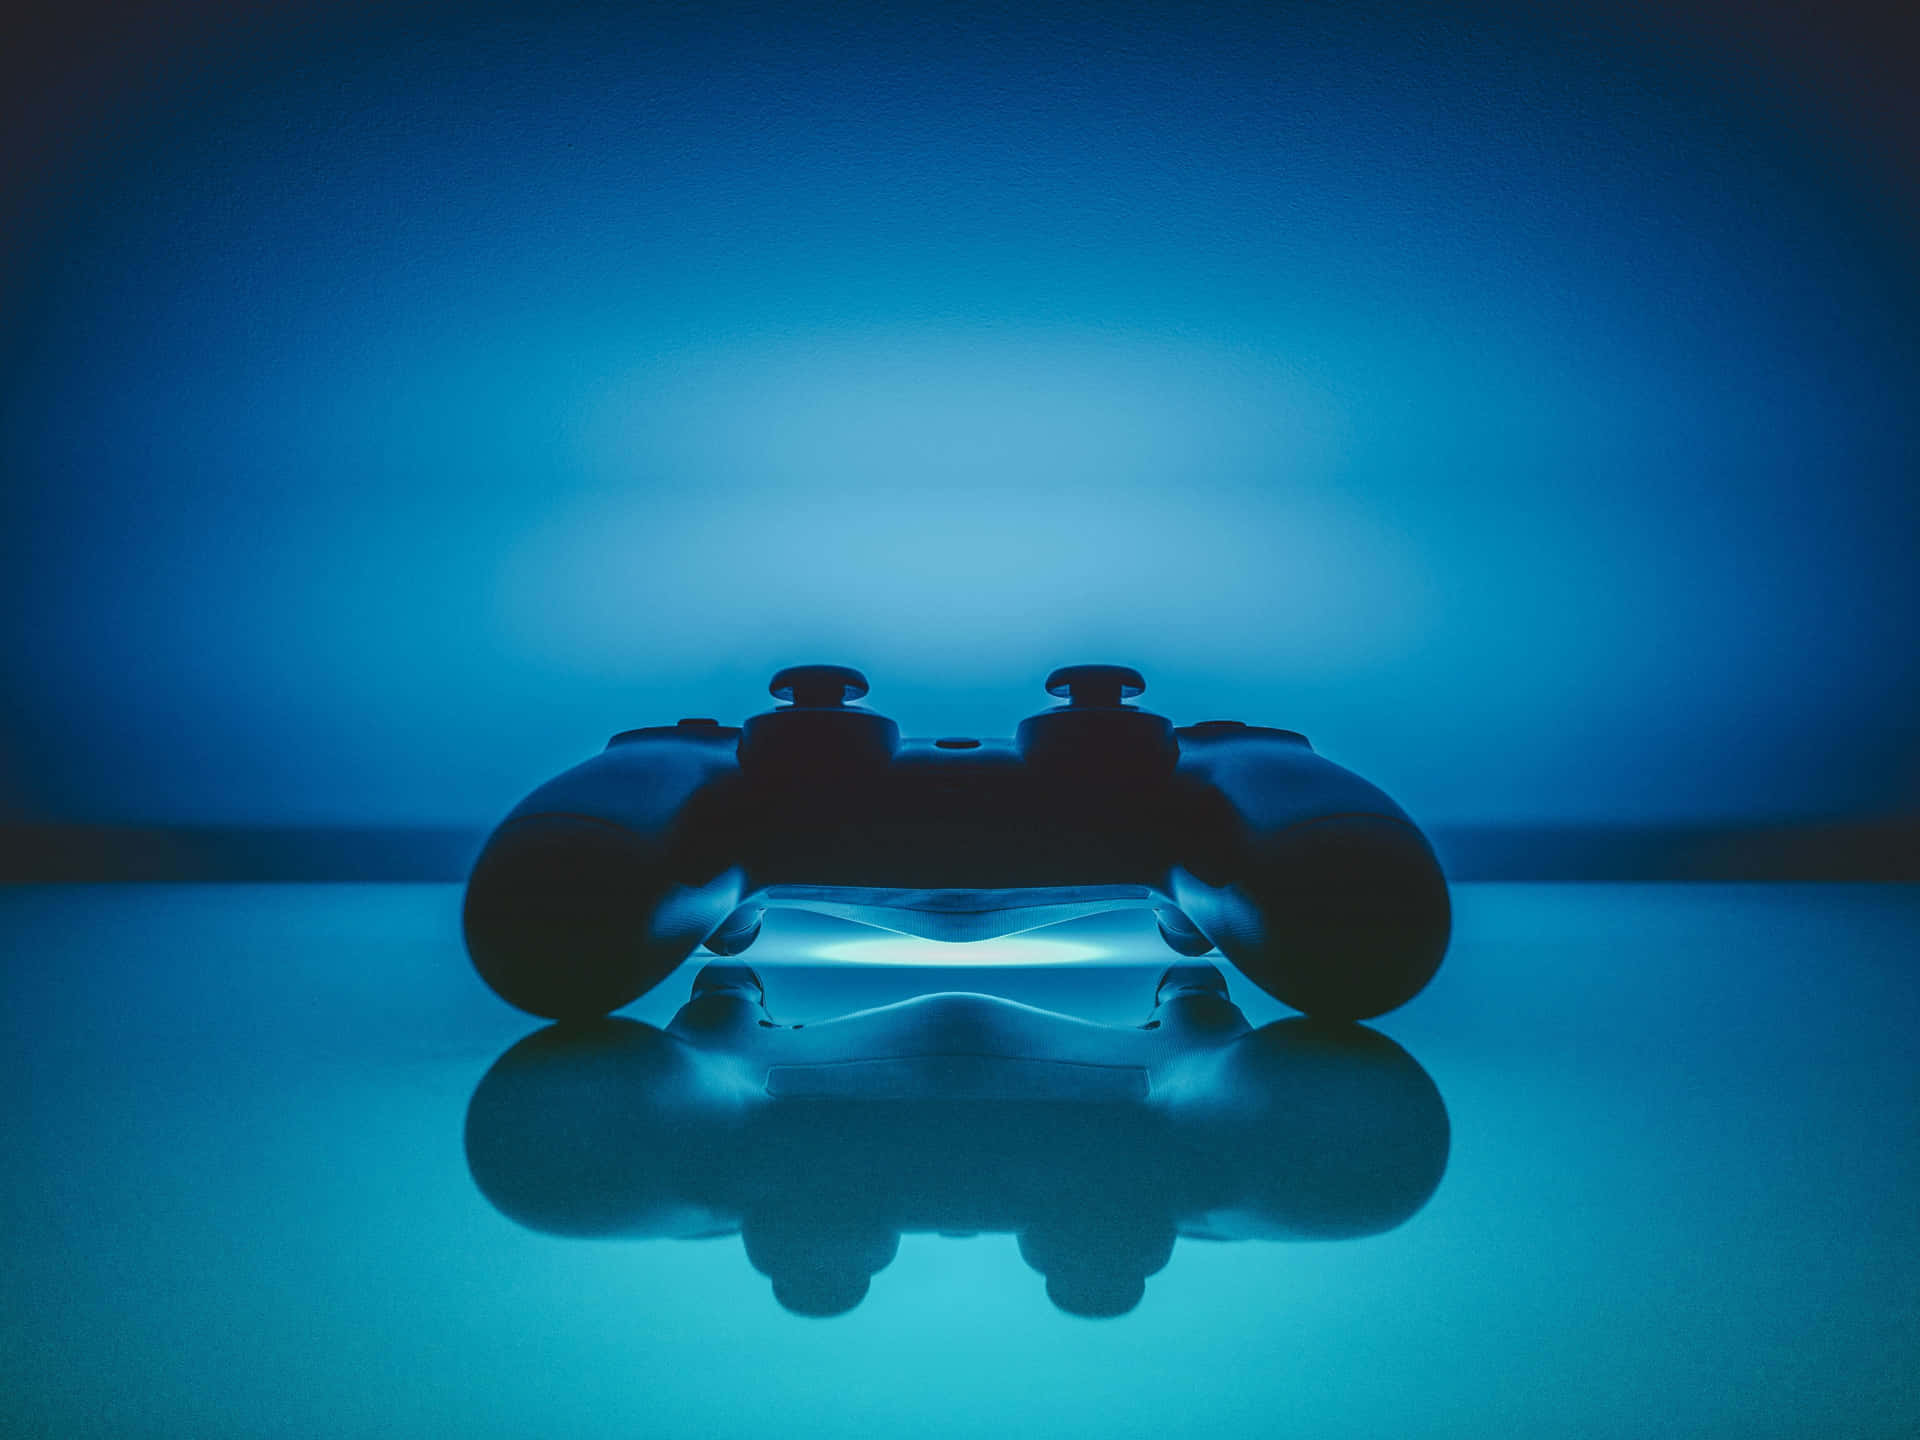 Umcontrole De Videogame Está Sentado Em Uma Superfície Azul. Papel de Parede